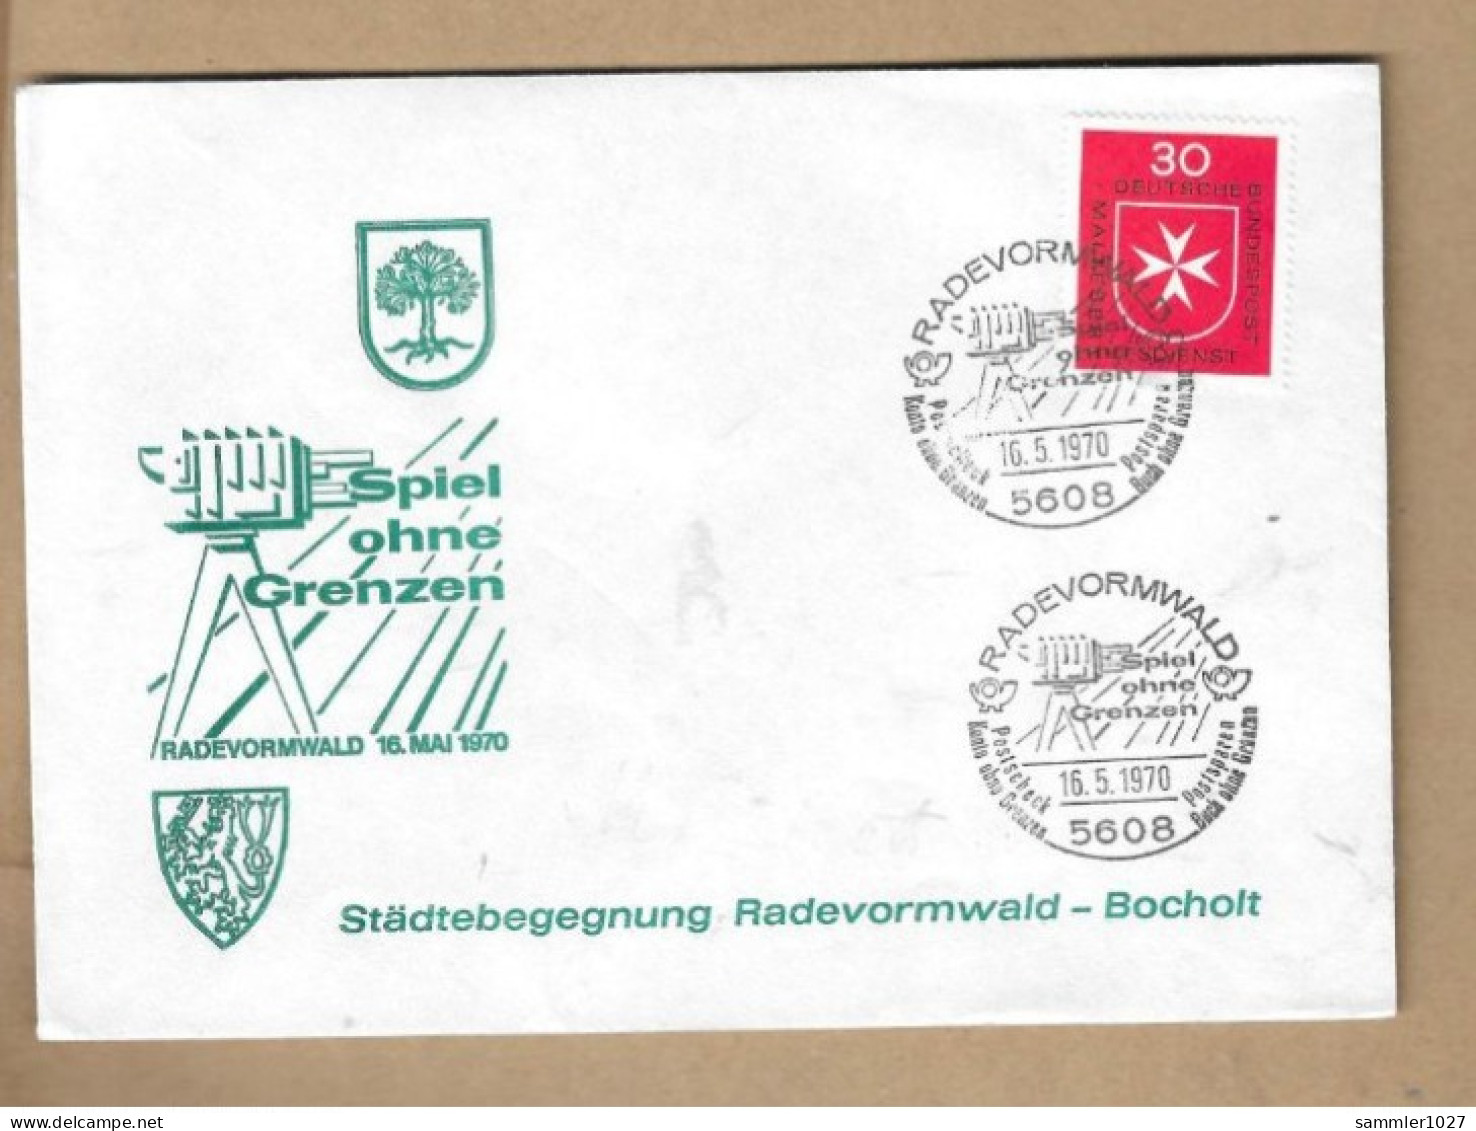 Los Vom 17.05 - Sammler-Briefumschlag Aus Radevornwald 1970 - Covers & Documents